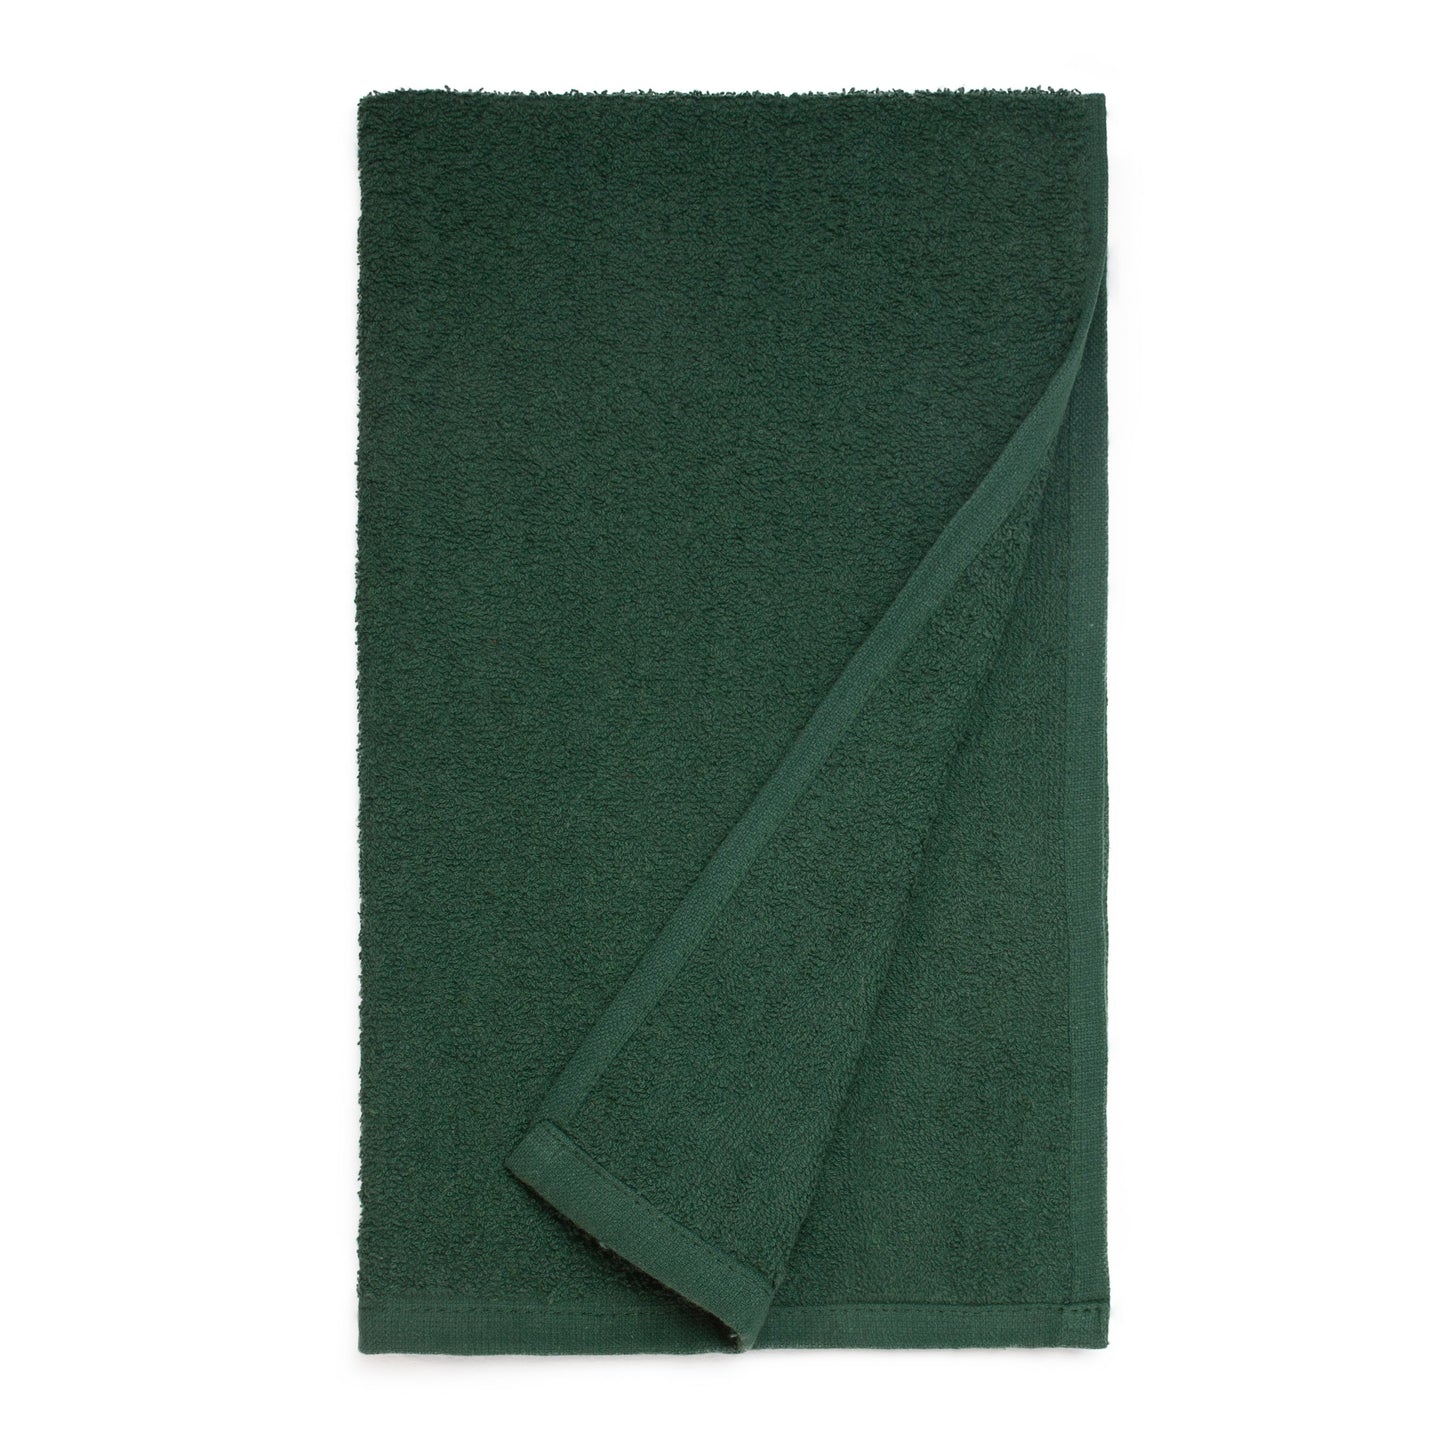 American Dawn | Ascent28 16X28 Inch Dark Green Car Wash Towel American Dawn